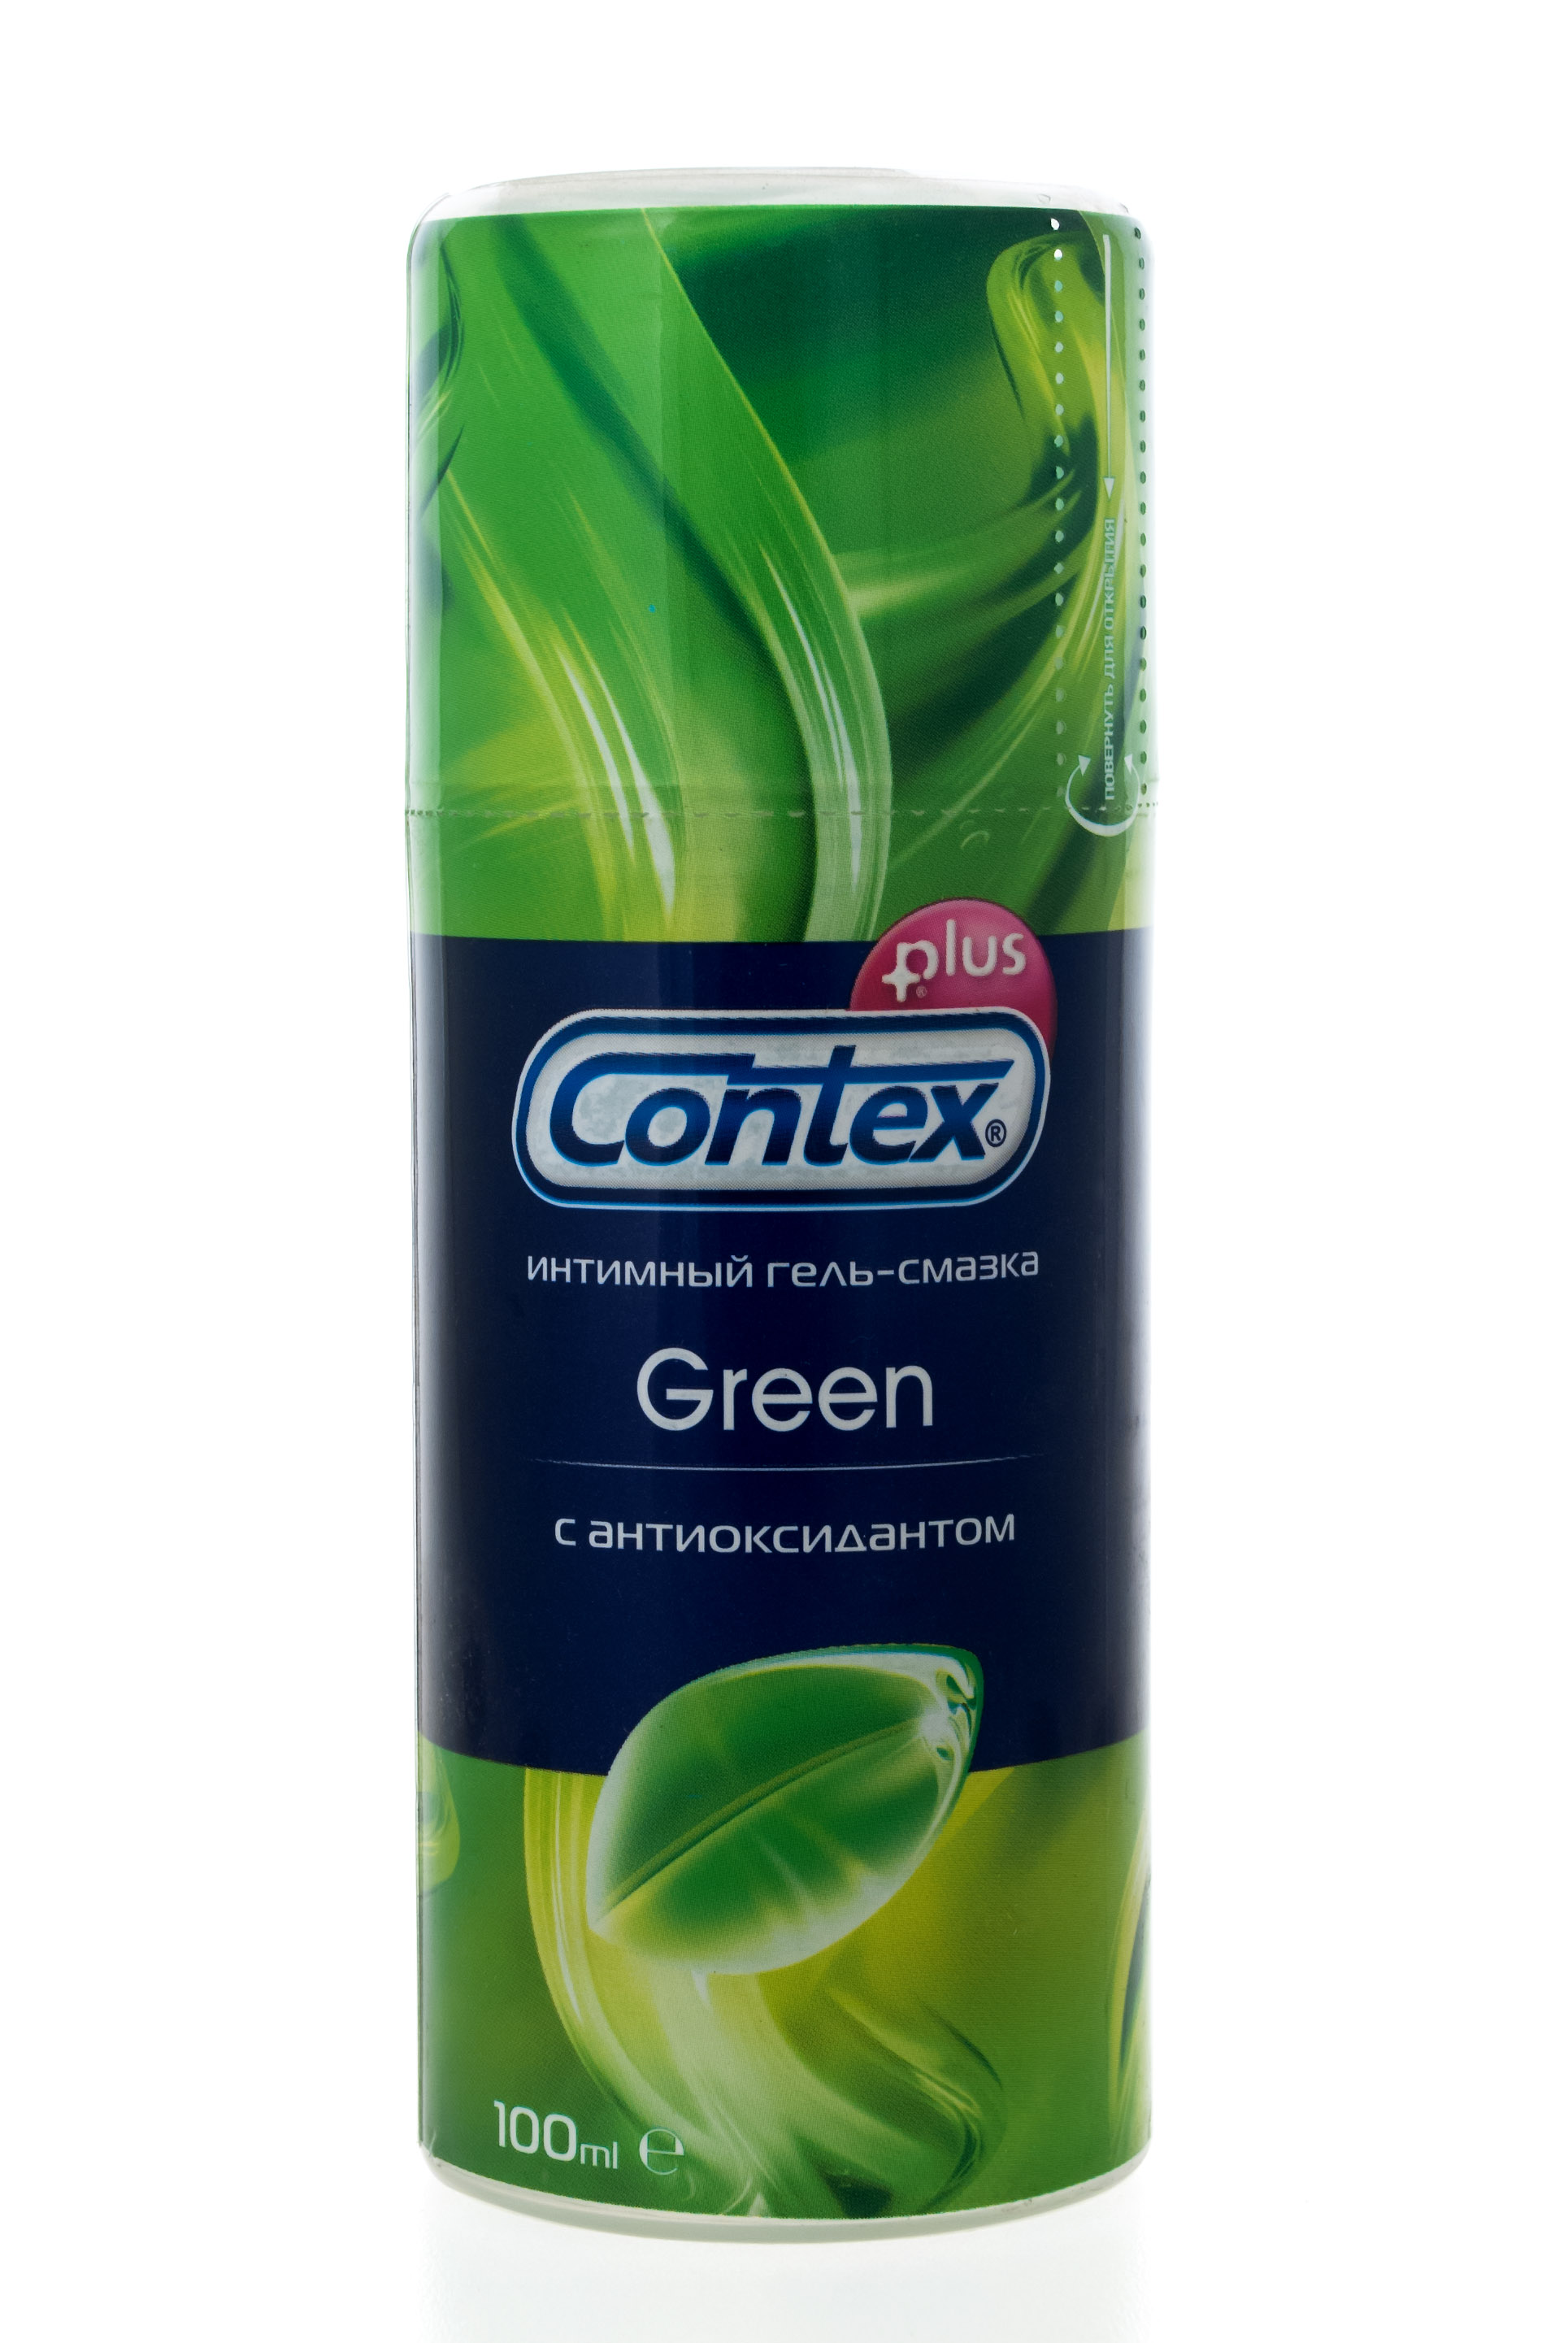 Contex Интимный гель-смазка Green, 100 мл (Contex, Гель-смазка)